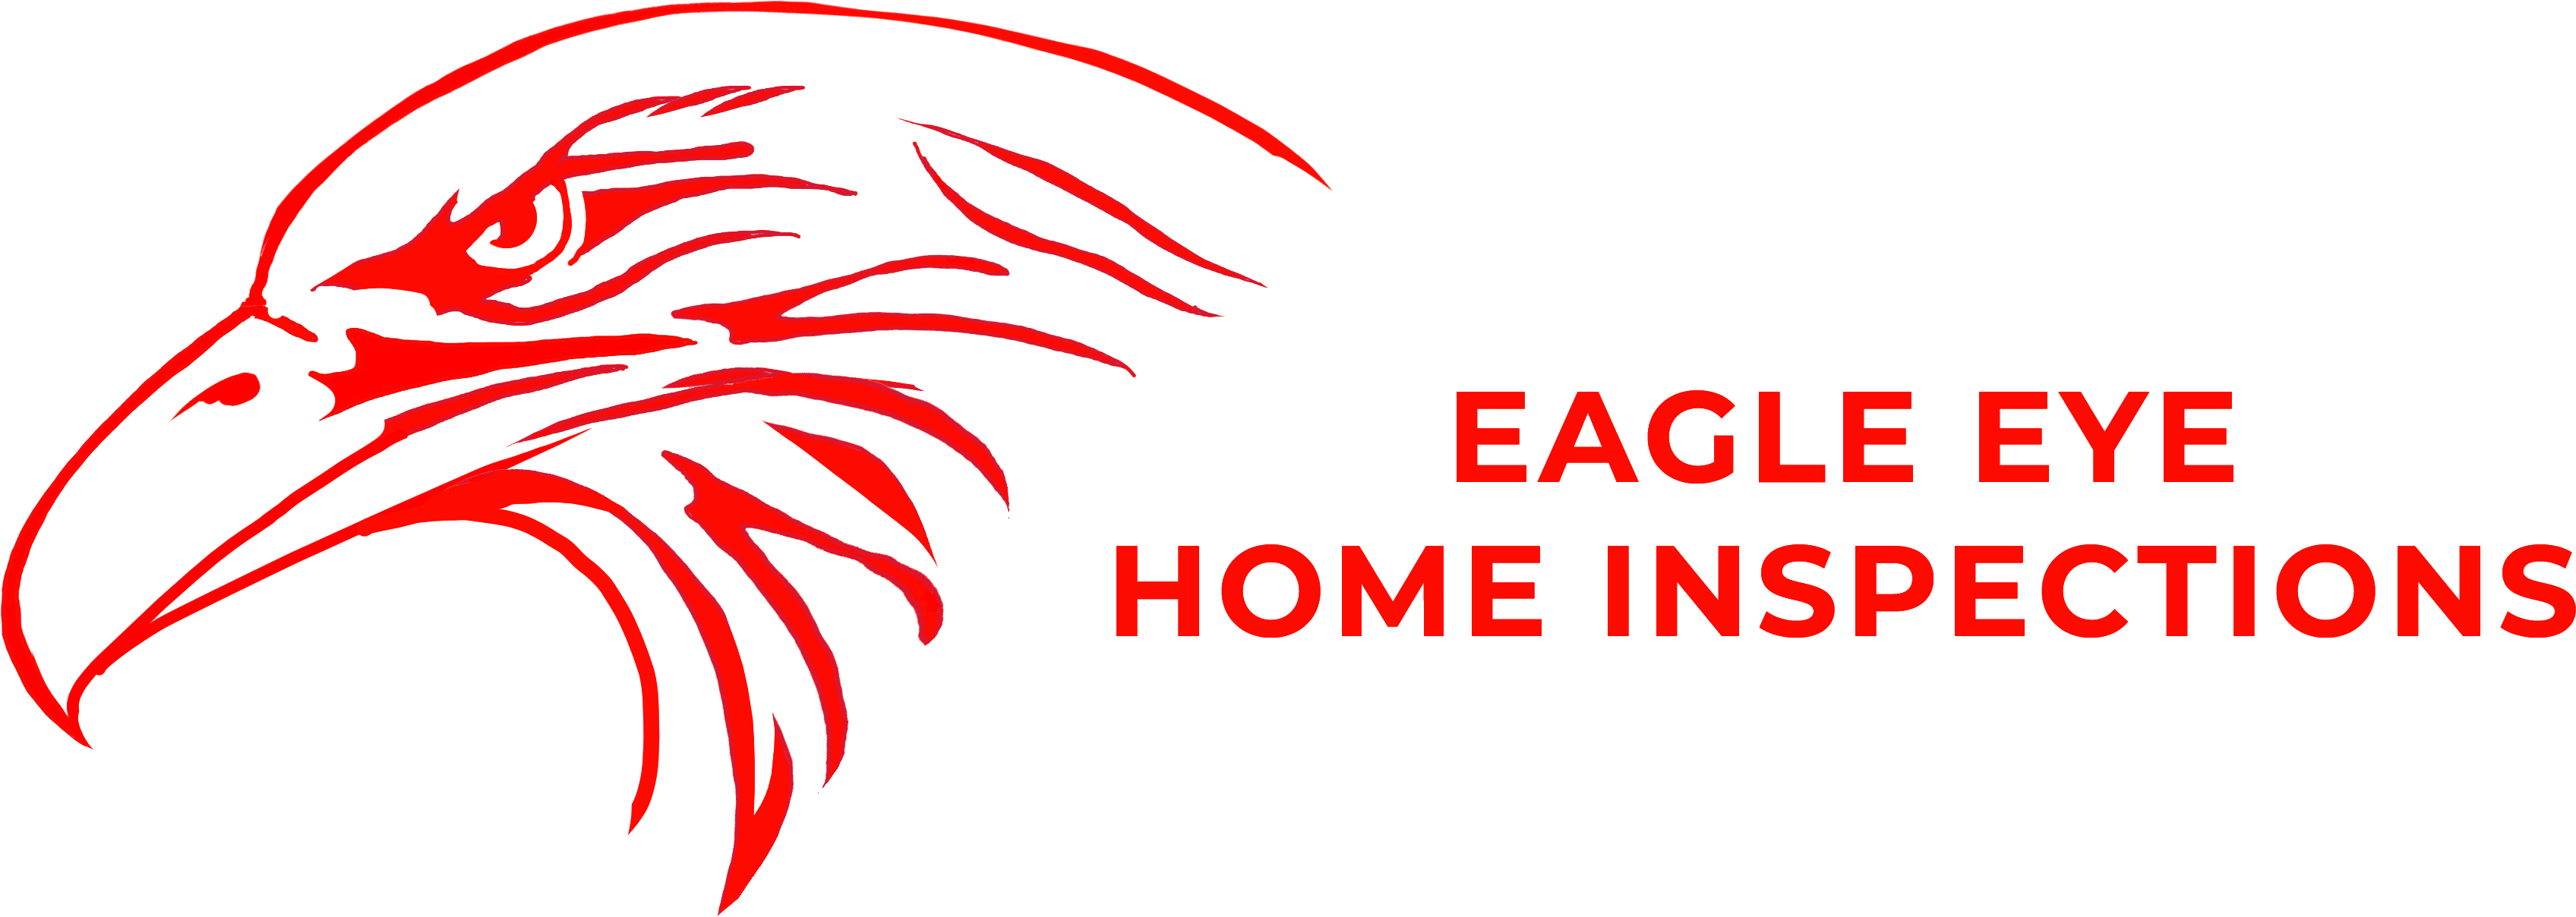 Eagle Eye Home Inspections Logo